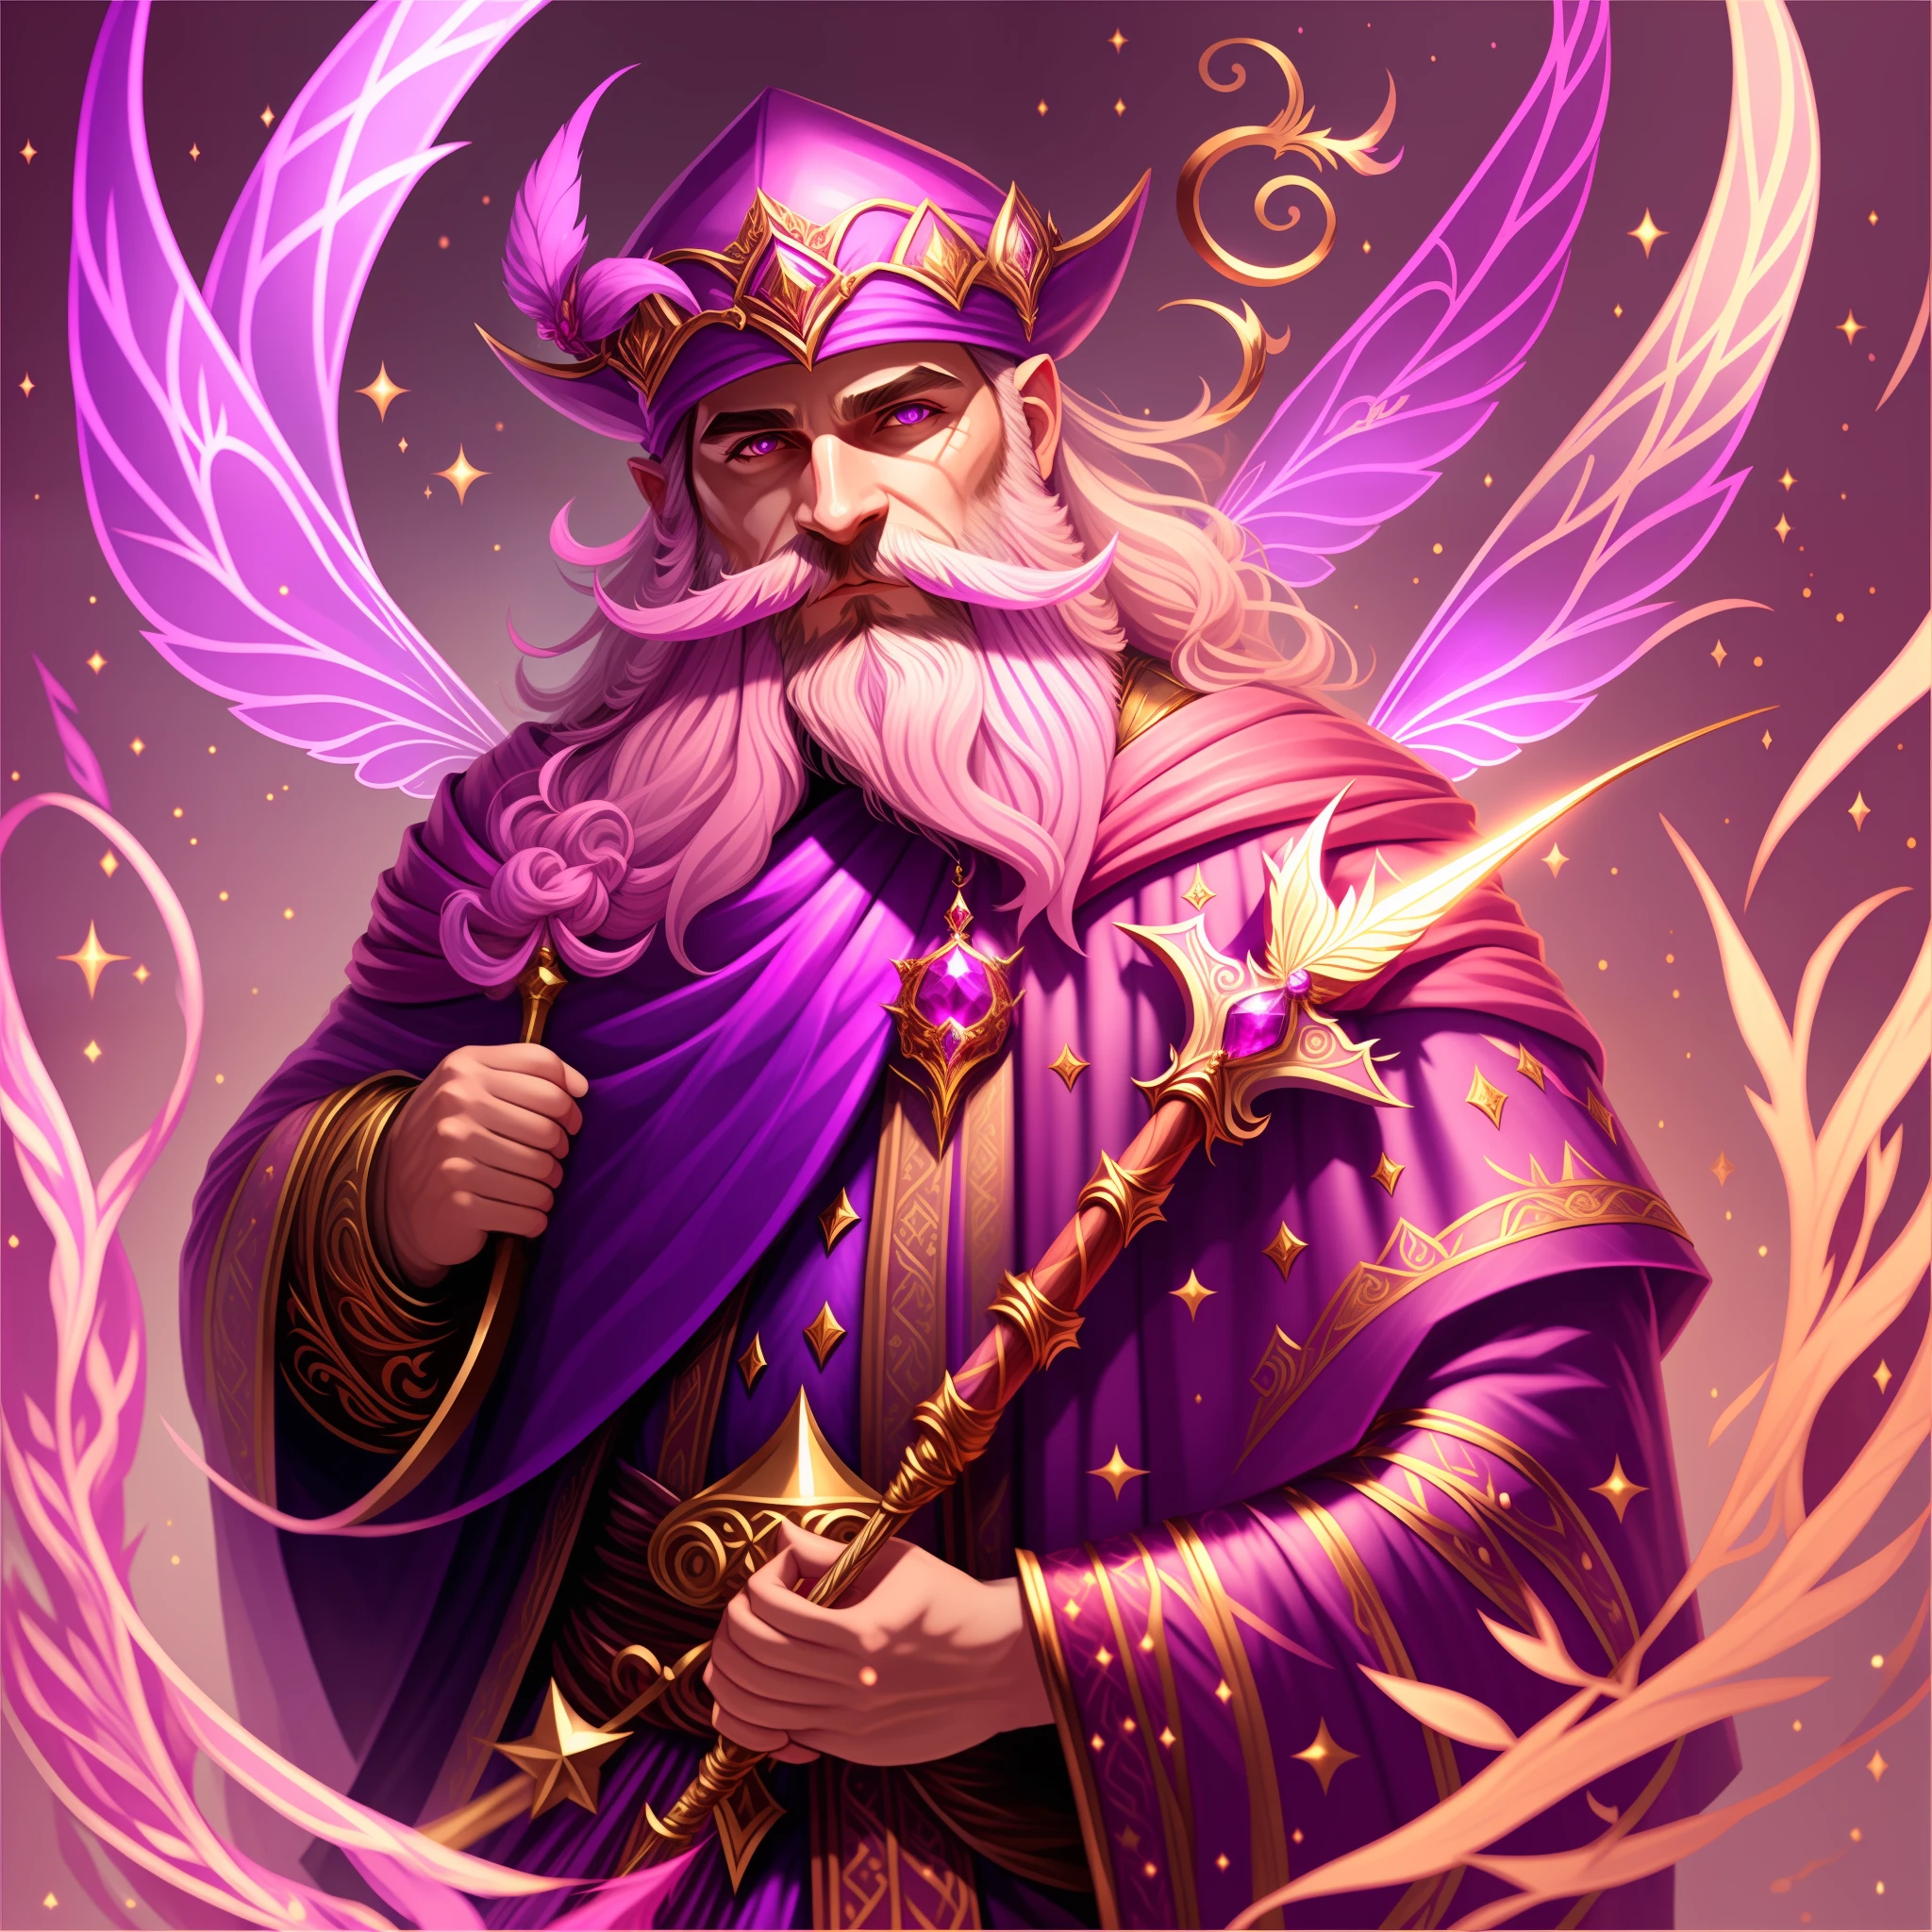 сказочный, Мужской, розово-фиолетовый плащ волшебника, золотая палочка с рубином, волшебник борода, магия летает вокруг, шедевр, Лучшее качество